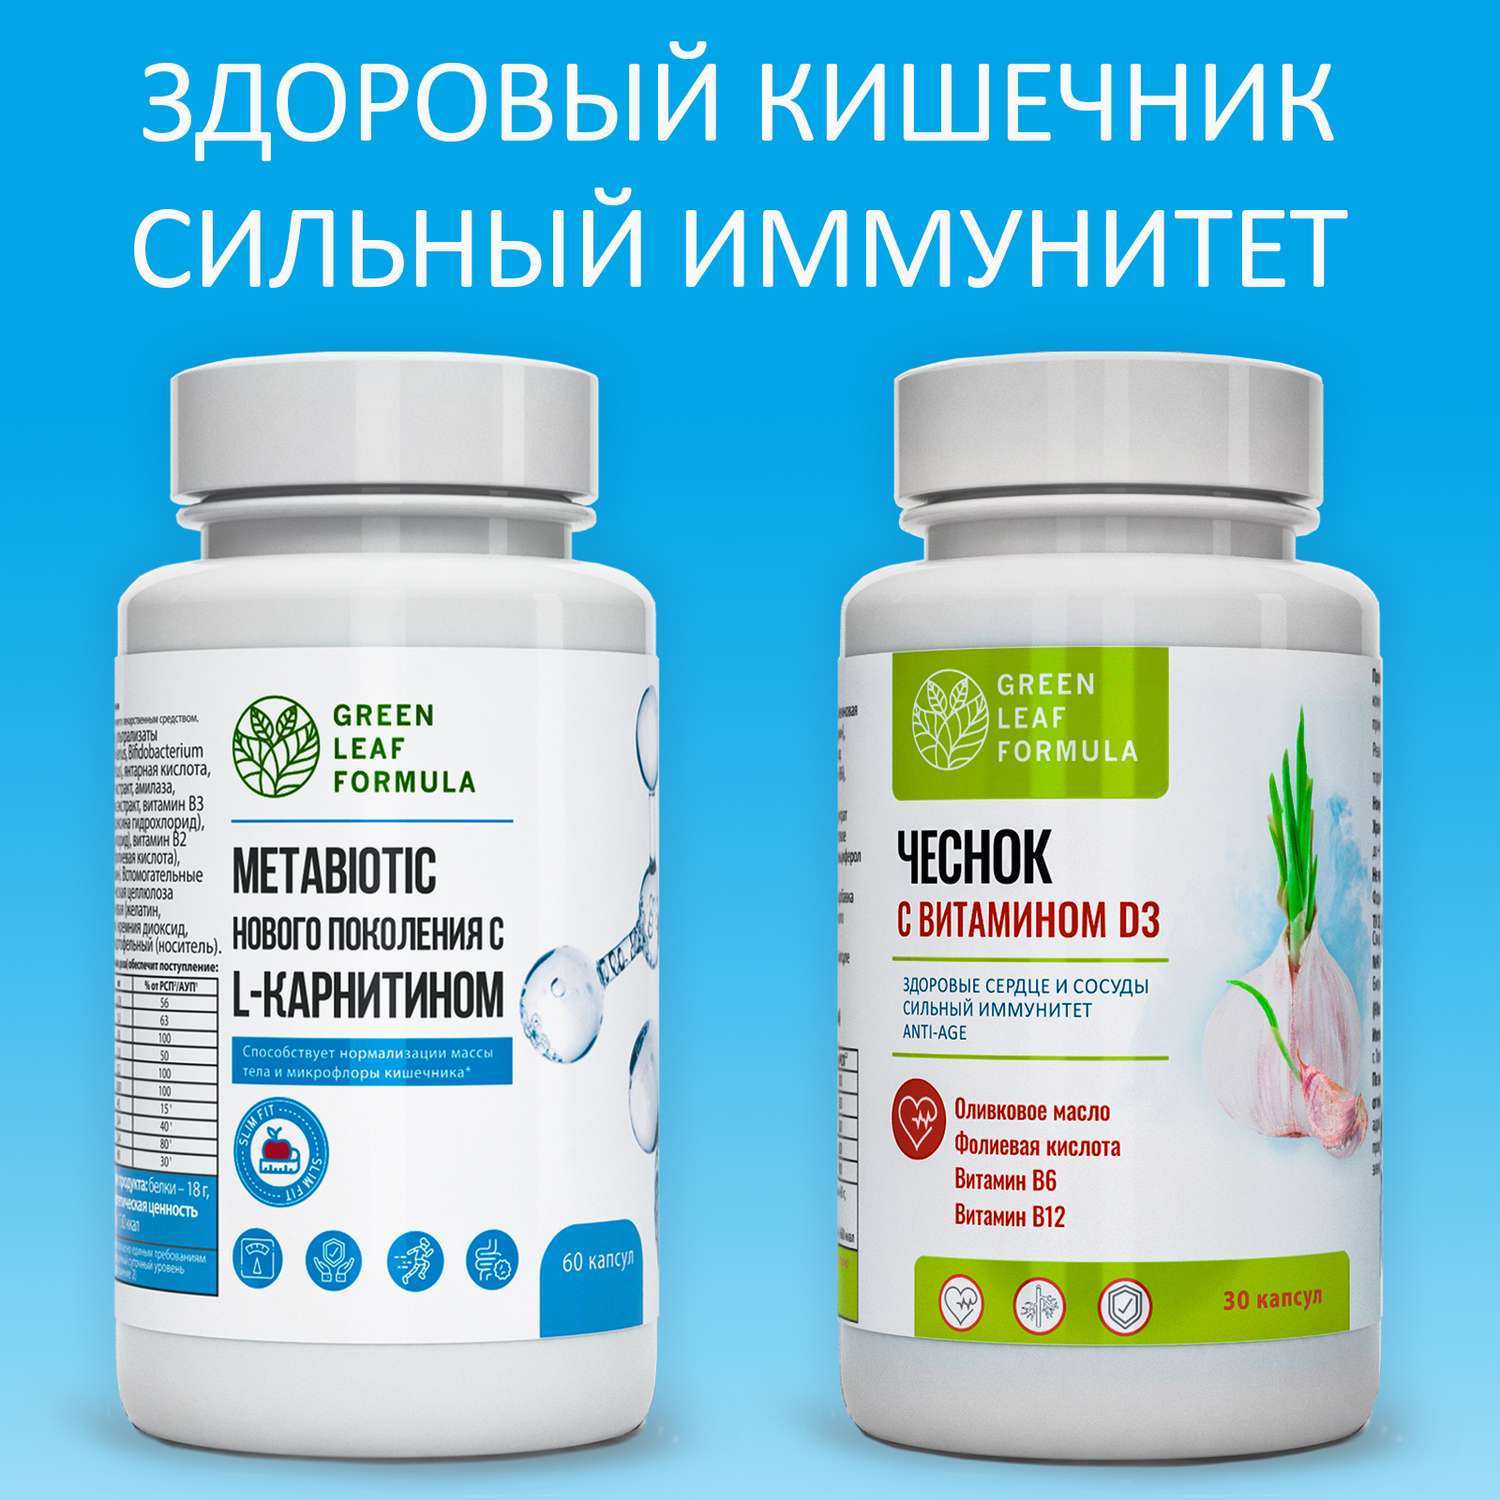 Метабиотик и Экстракт чеснока Green Leaf Formula пробиотики для кишечника ферменты для пищеварения витамины для сердца и сосудов 2 банки - фото 1